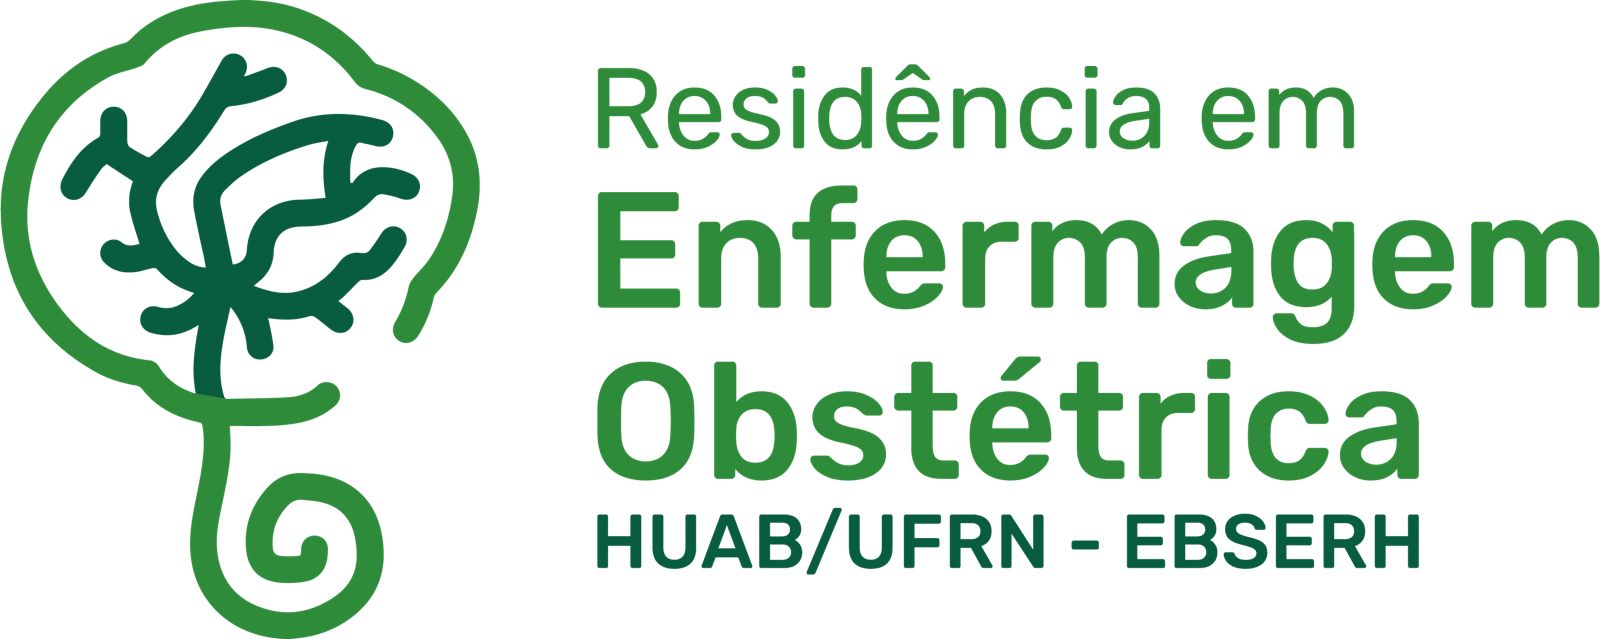 Conferência INAUGURAL DO PROGRAMA DE RESIDÊNCIA EM ENFERMAGEM OBSTÉTRICA DO HUAB